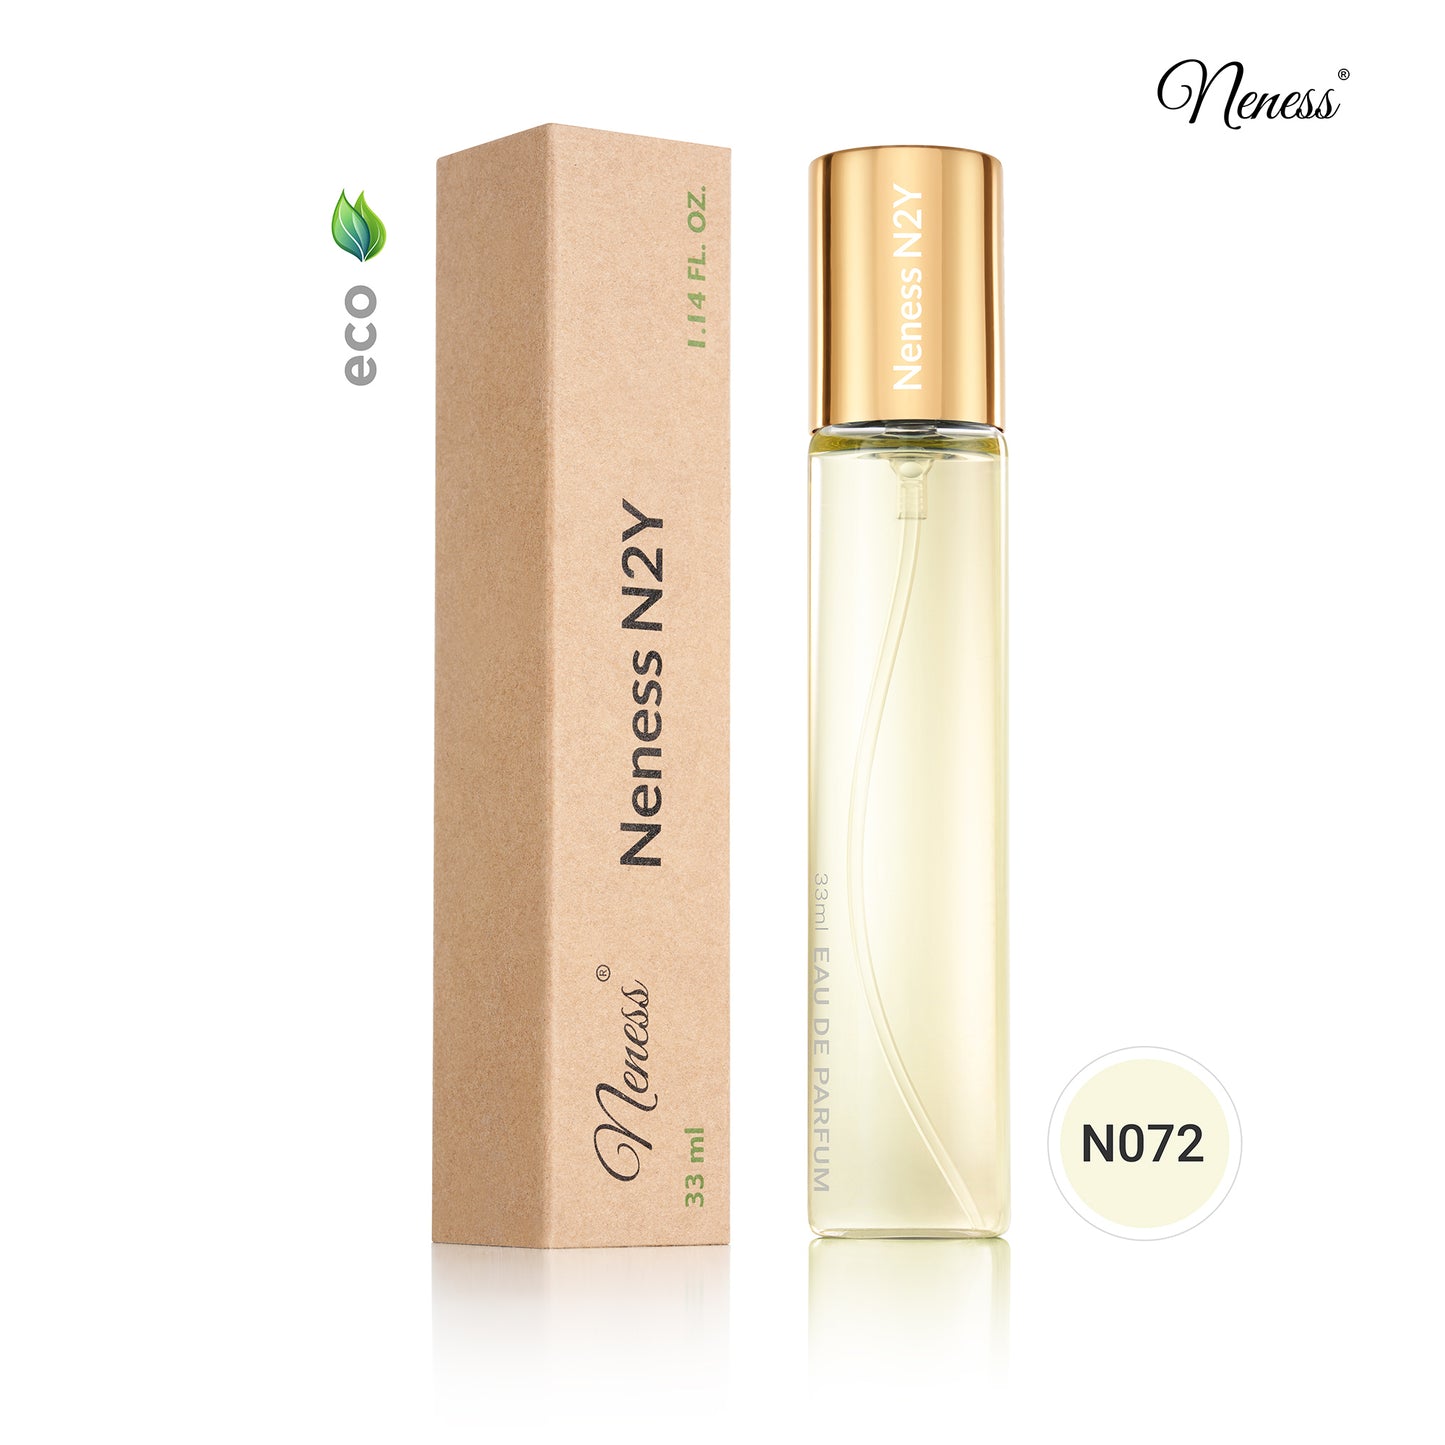 N072. Neness N2Y - 33 ml - Perfume For Women